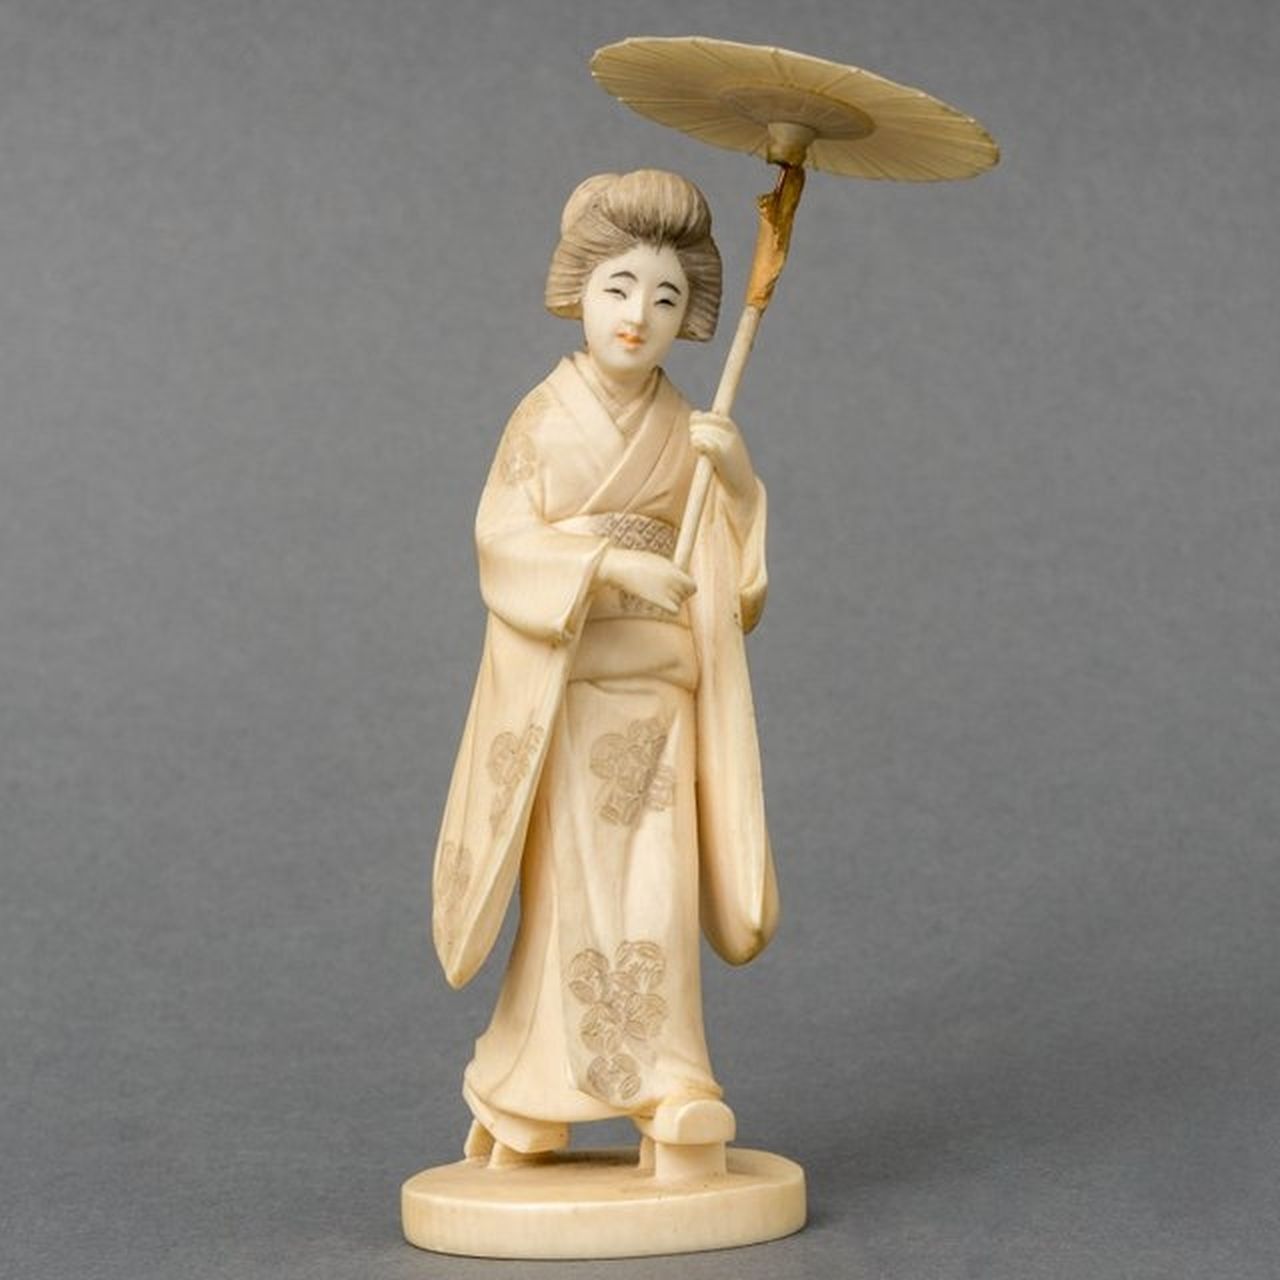 Japanse School, 19e eeuw   | Japanse School, 19e eeuw | Skulpturen und Objekte zum Verkauf angeboten | Okimono einer Frau in Kimono mit Sonnenschirm, Elfenbein 13,0 cm